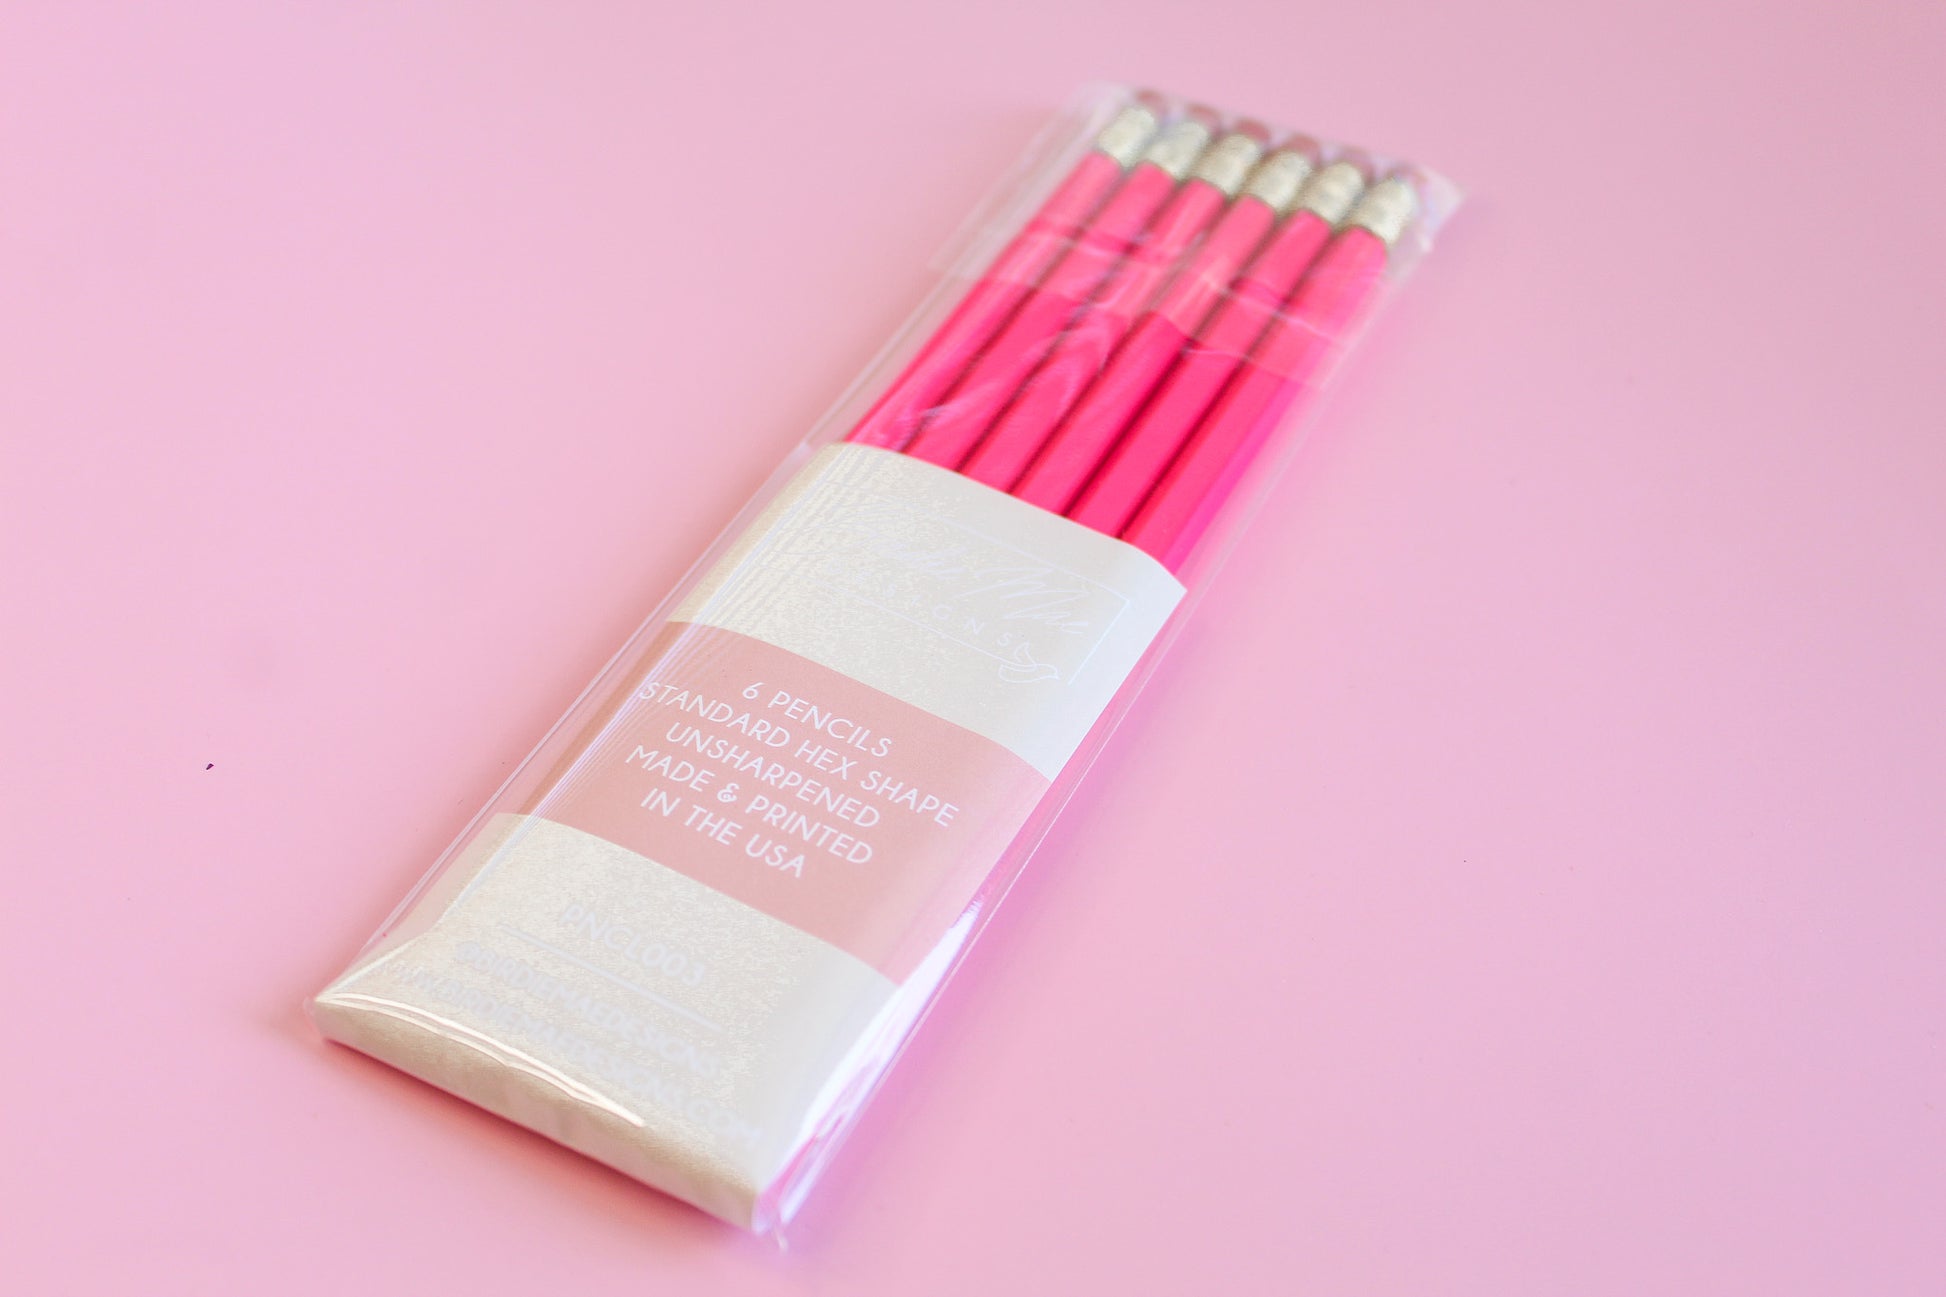 6 Standard Hex Shaped Pencils, neon pink pencils, Dream Big Darling pink pencil set